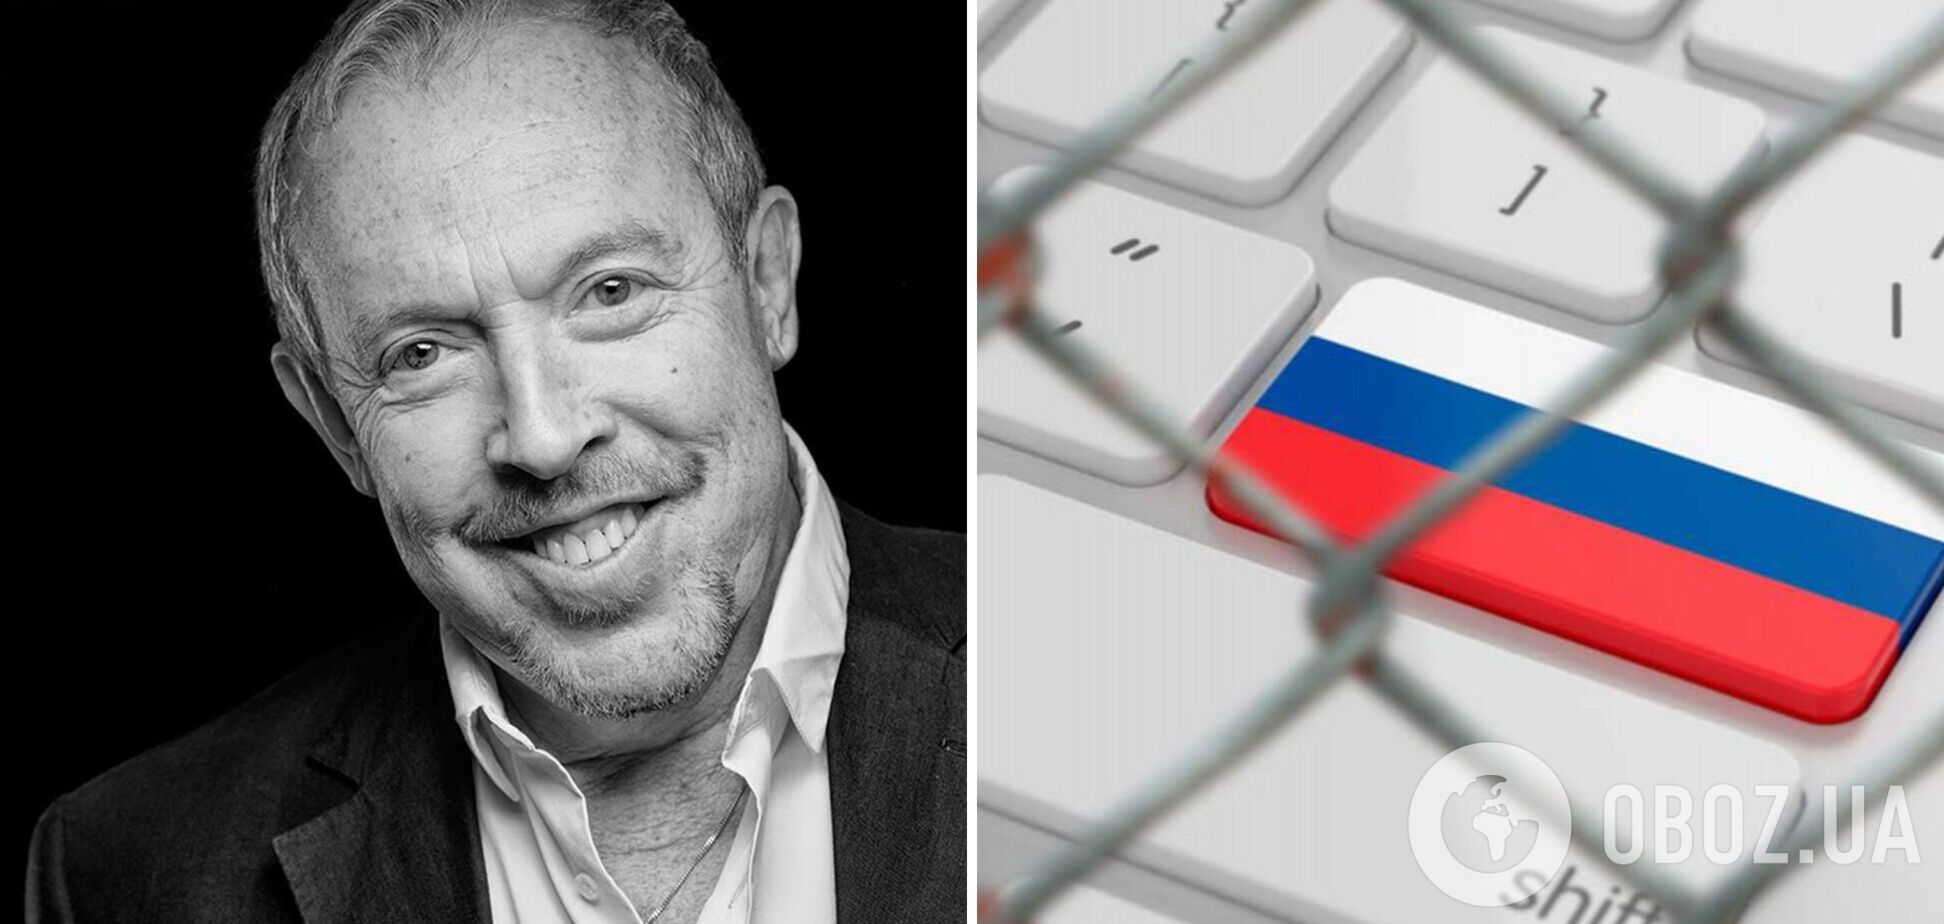 Андрей Макаревич послал российских пропагандистов, распространяющих о нем фейки из-за поддержки Украины